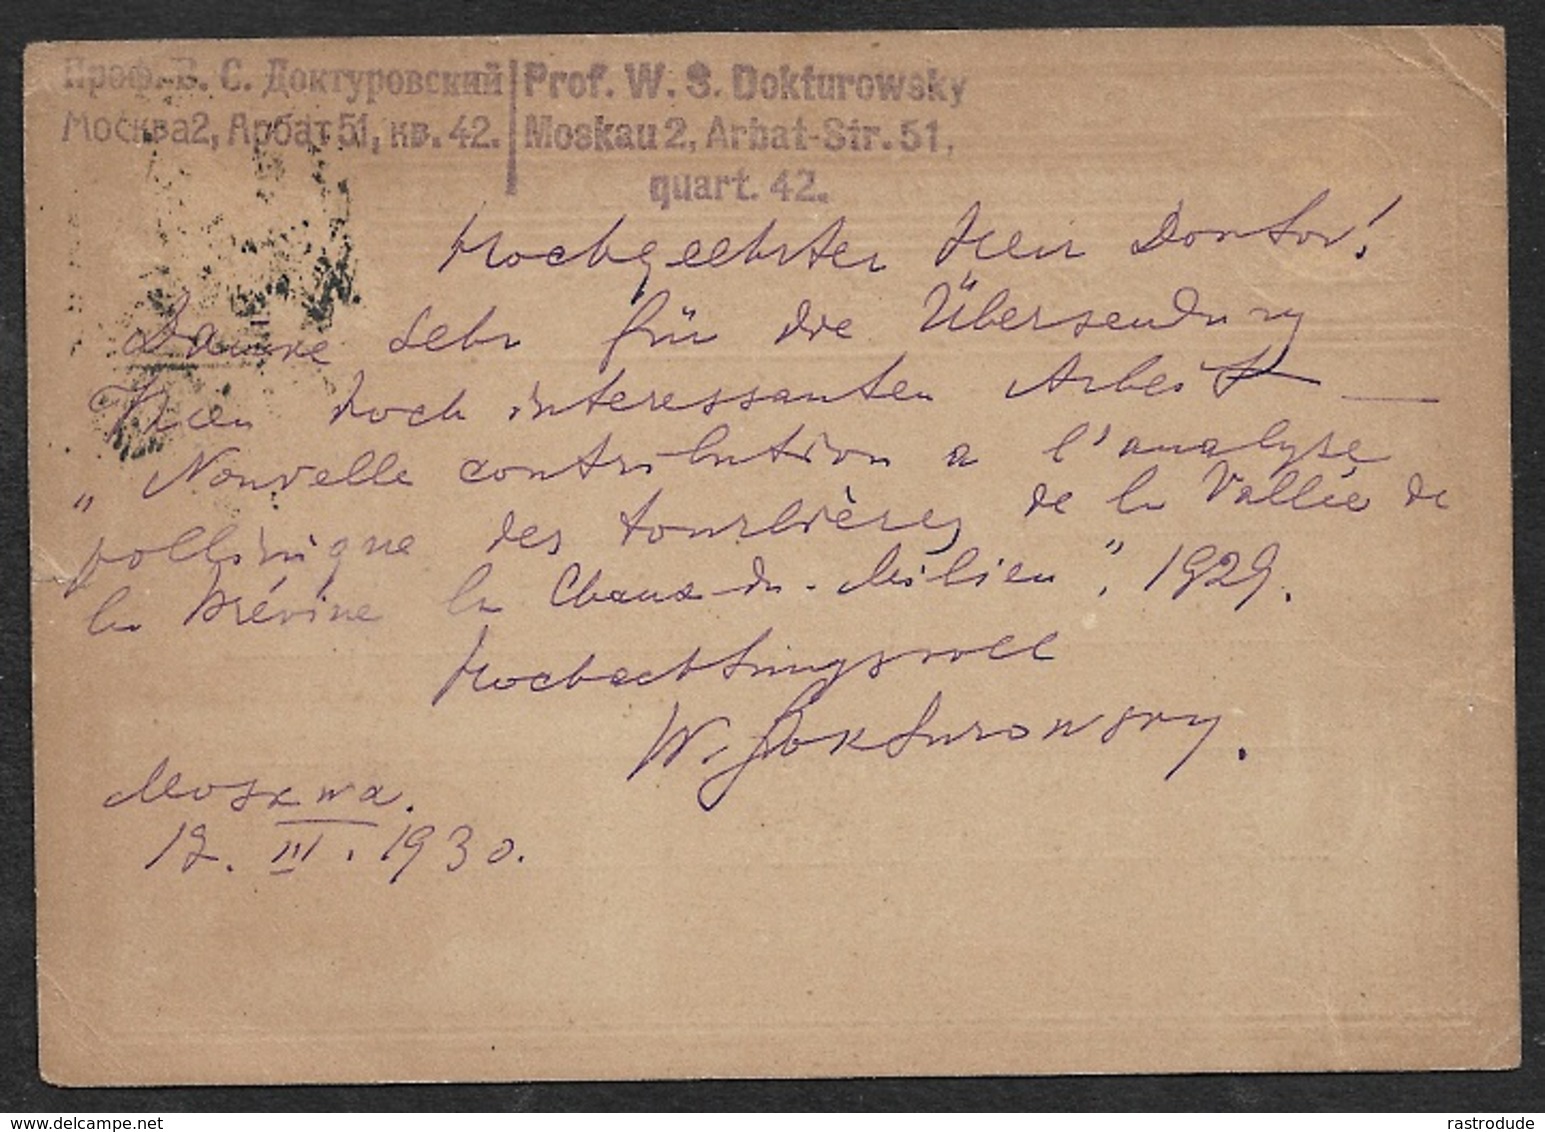 1930 SOVIET UNION GS Mi. P 72 - N. NEUCHATEL, SCHWEIZ - V. PROF. DOKTUROWSKY An PROF. HENRI SPINNER - BOTANIK - Briefe U. Dokumente